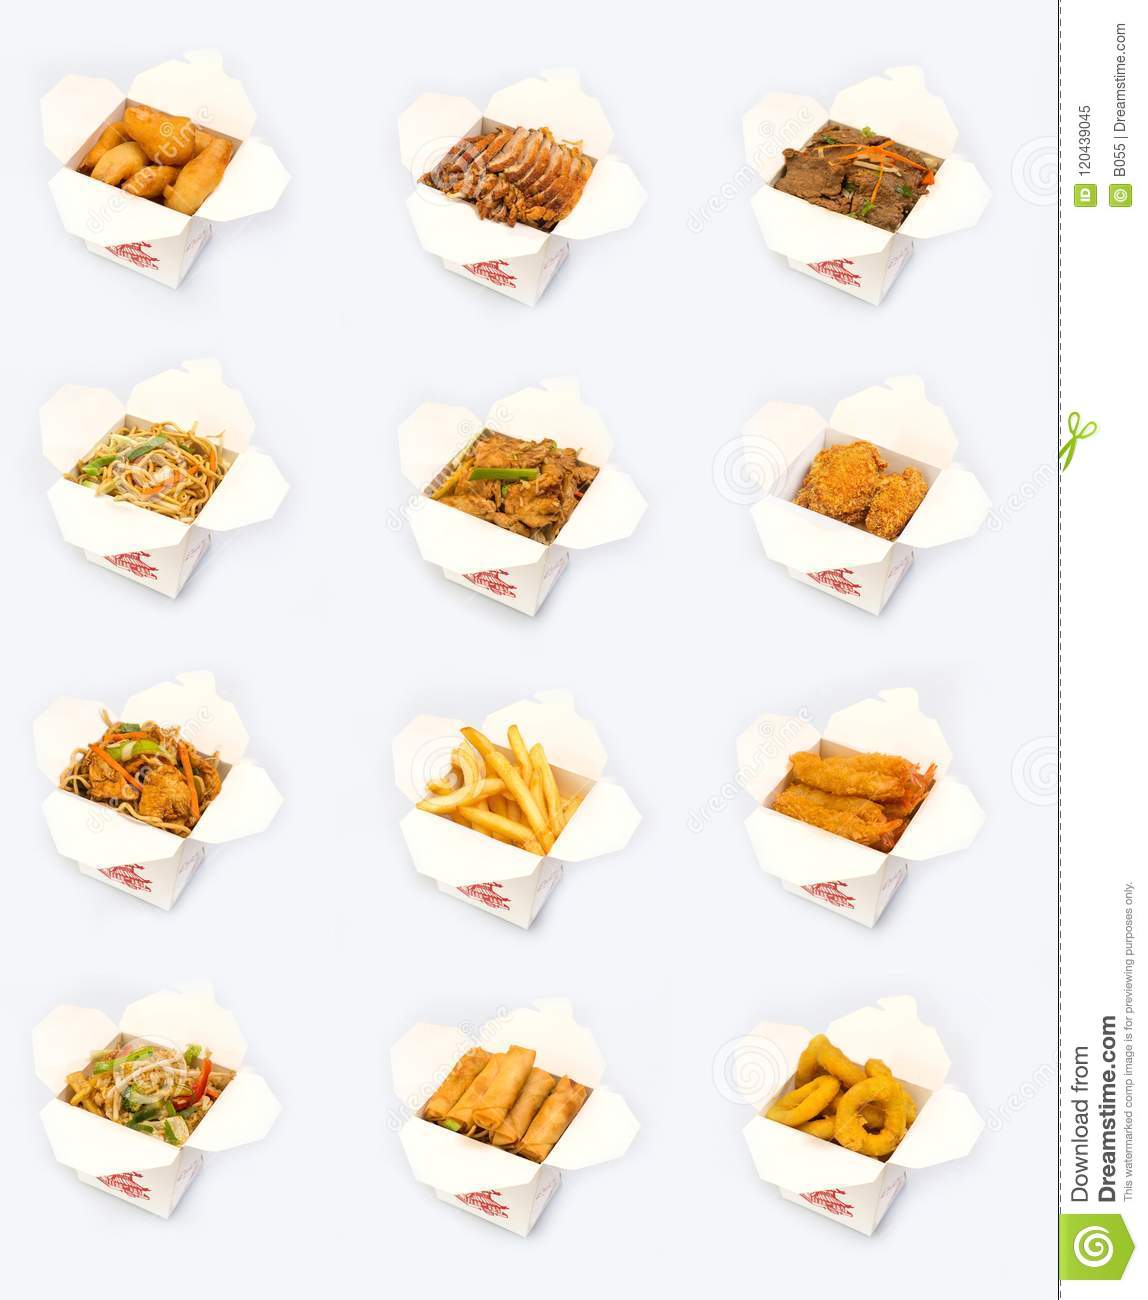 China Box Menu stock image. Image of menu, nudeln, china - 120439045 - china in box cardápio